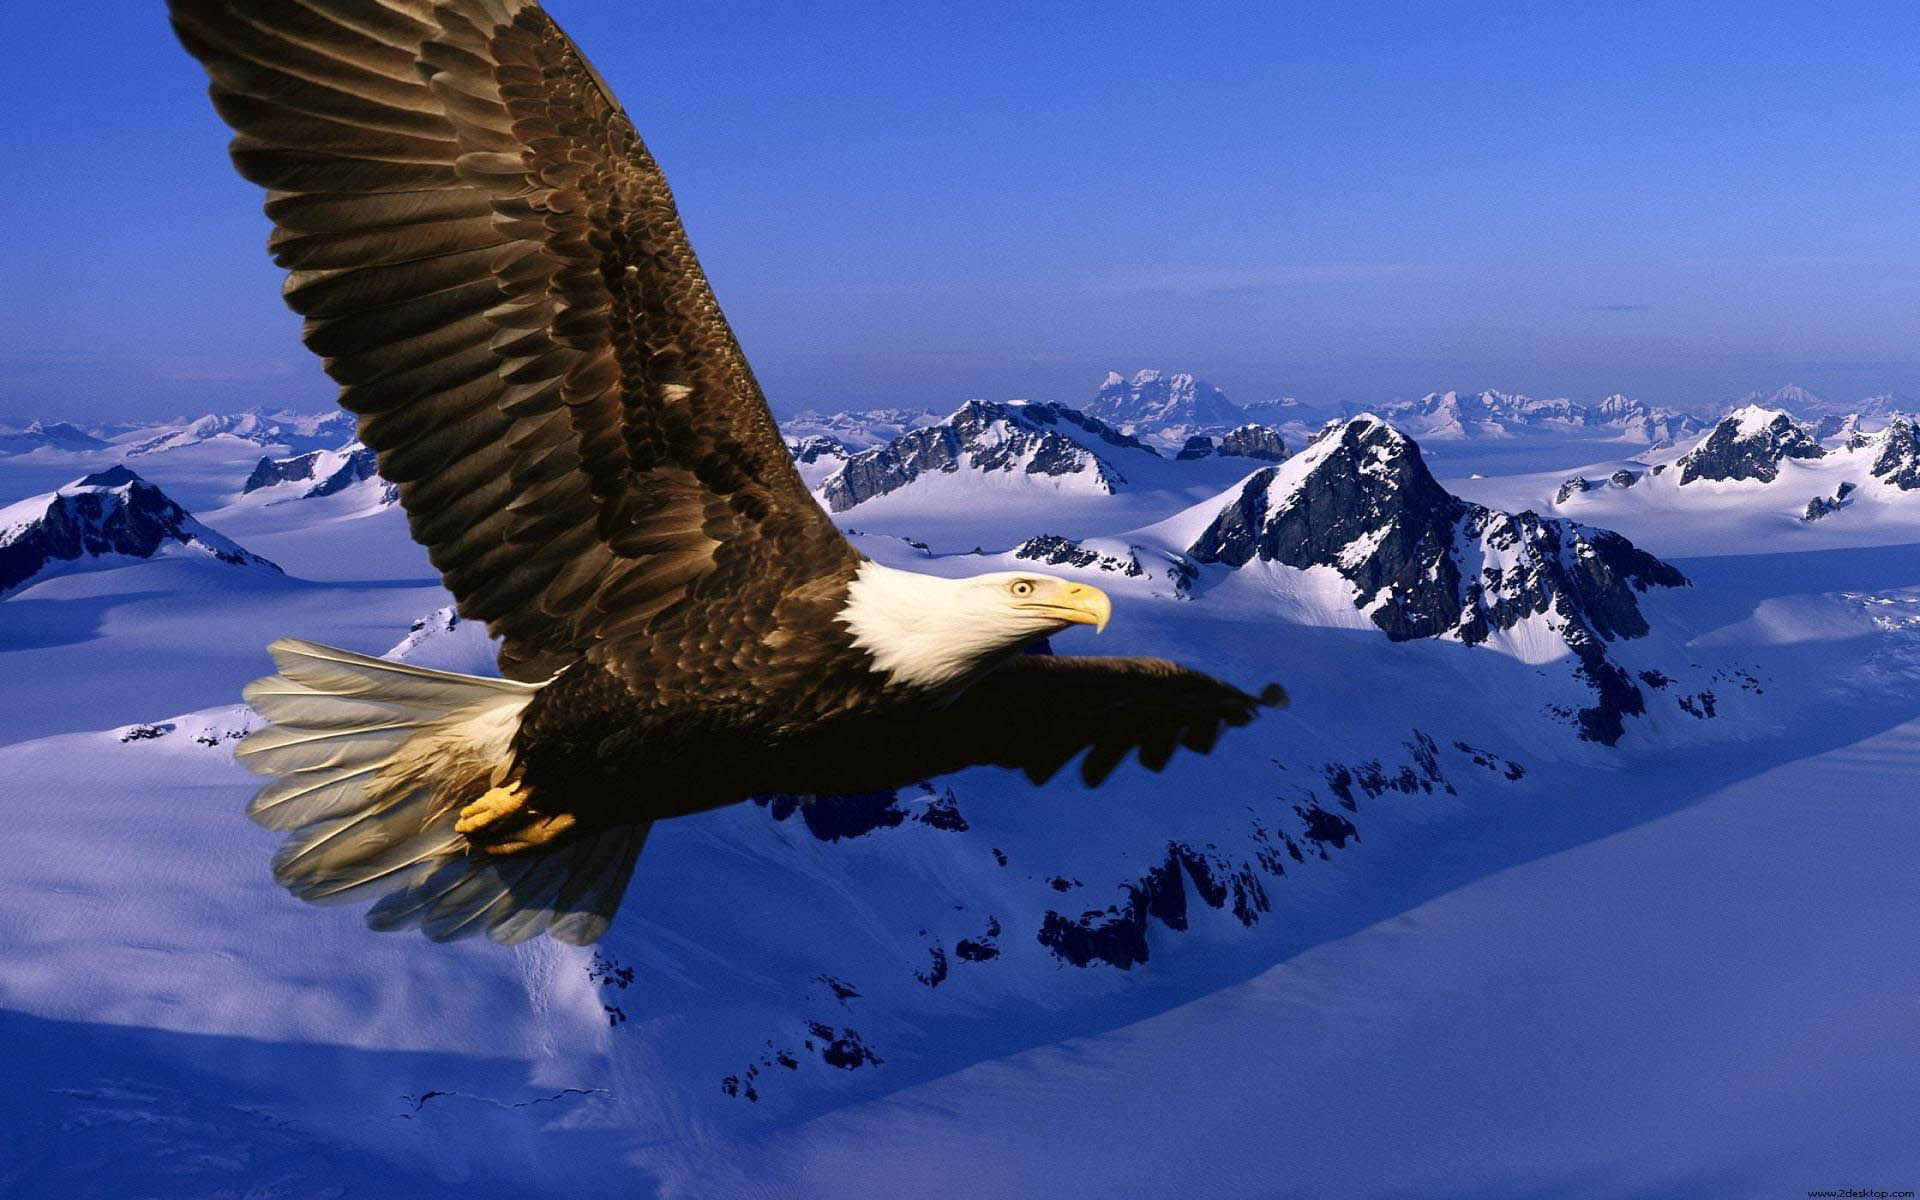 mobile desktop background bald eagle photo gallery download